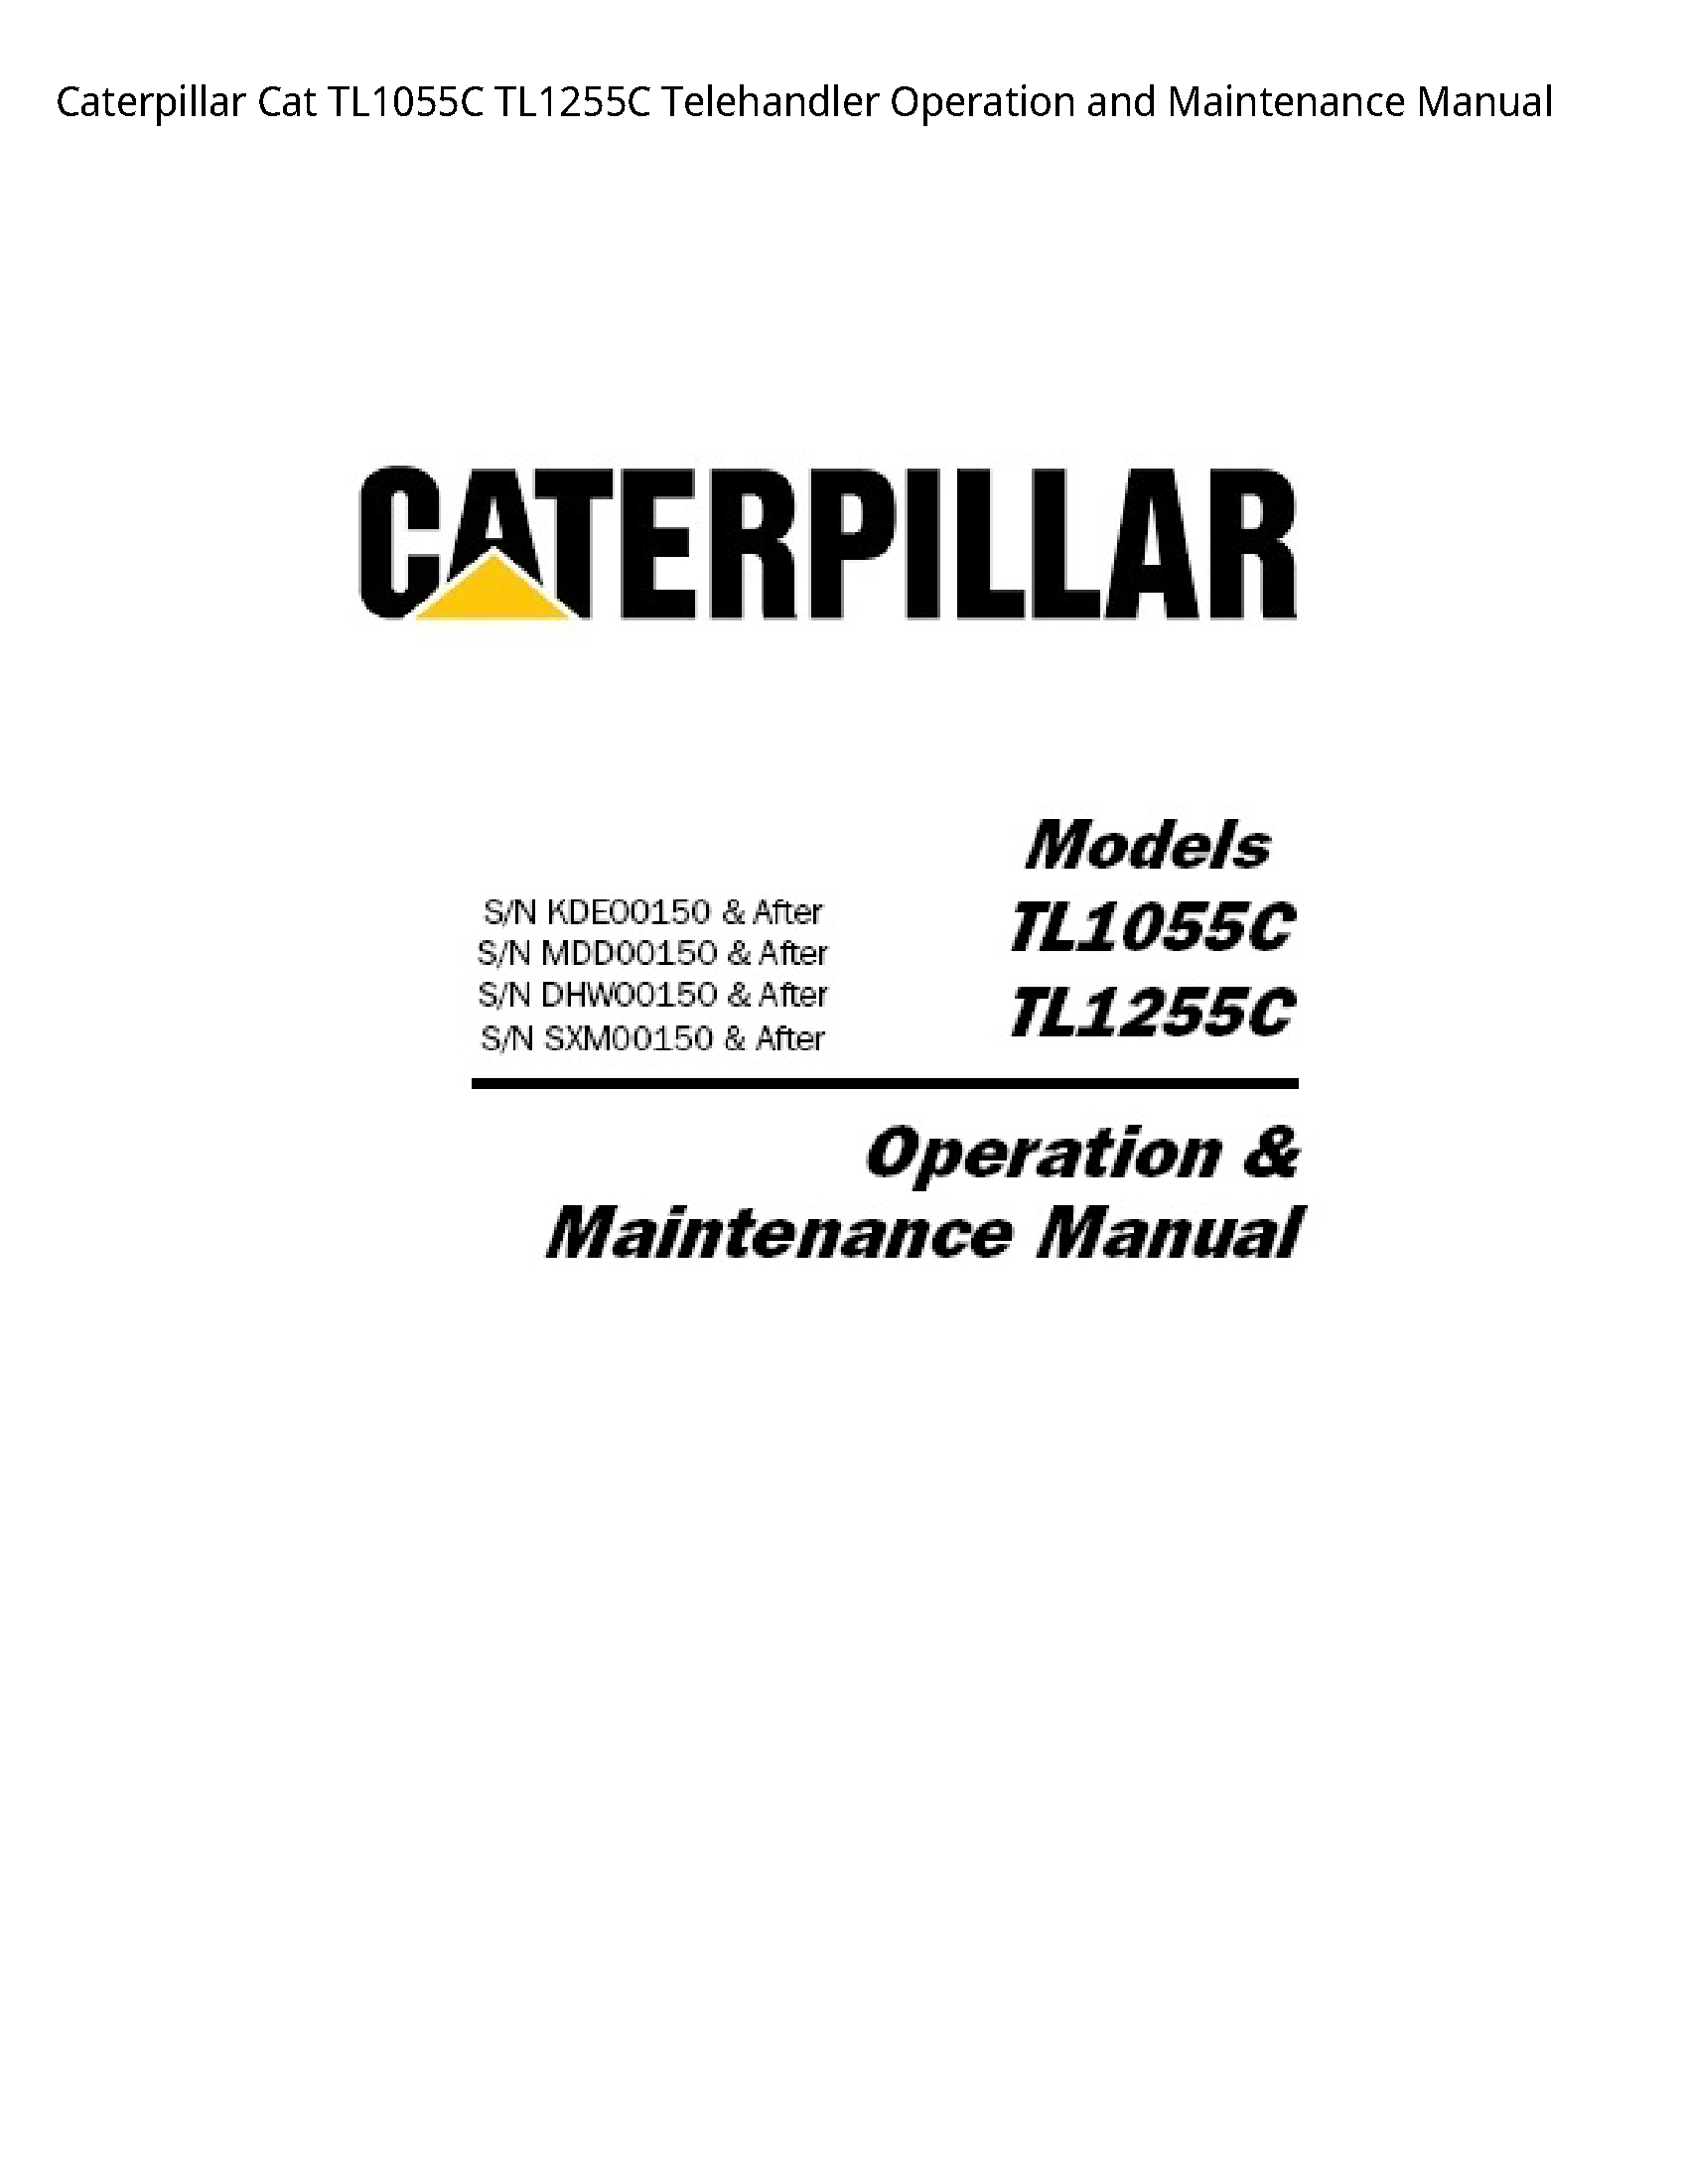 Caterpillar TL1055C Cat Telehandler Operation  Maintenance manual